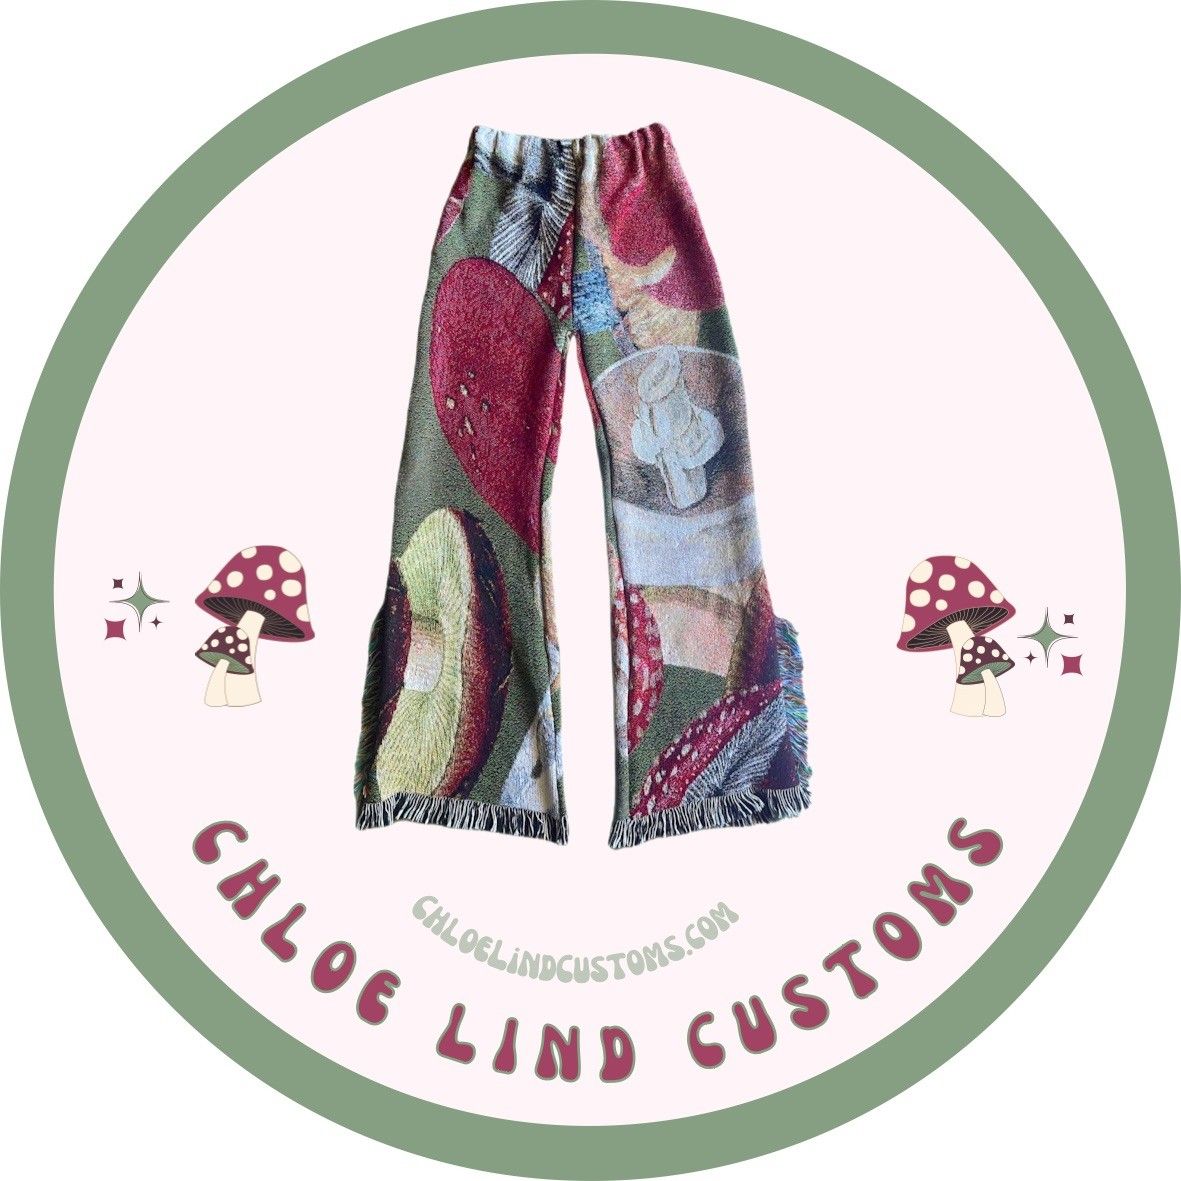 Chloe Lind Customs